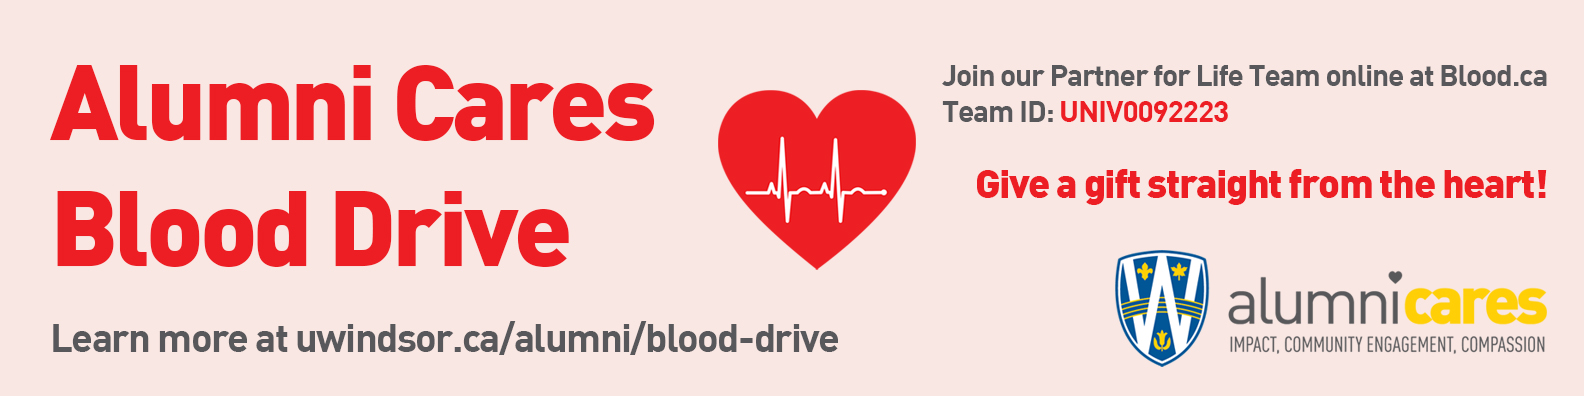 Alumni Cares Blod Drive Header Image for Alumni Week 2022 Blood Drive, September 26-30